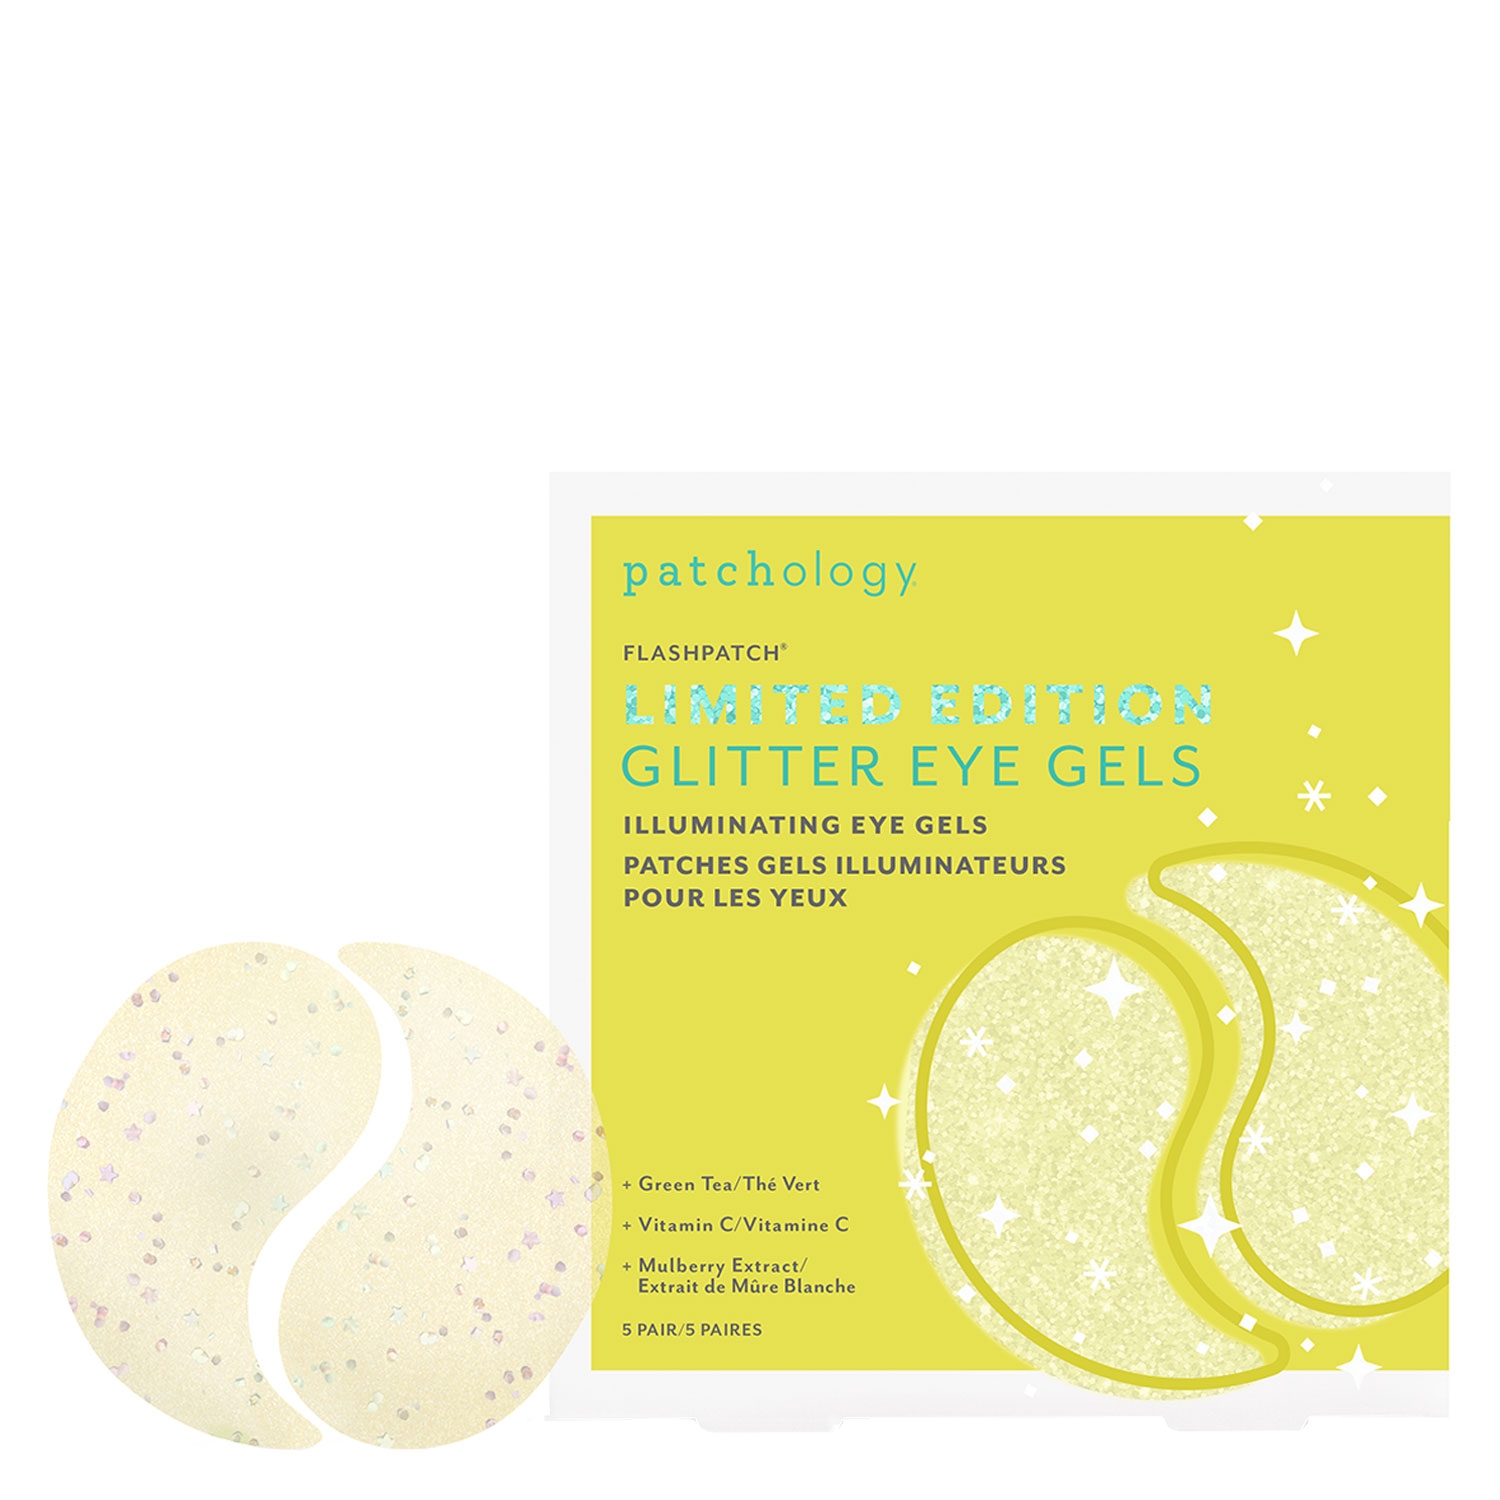 Produktbild von FlashPatch - Glitter Illuminating Eye Gels